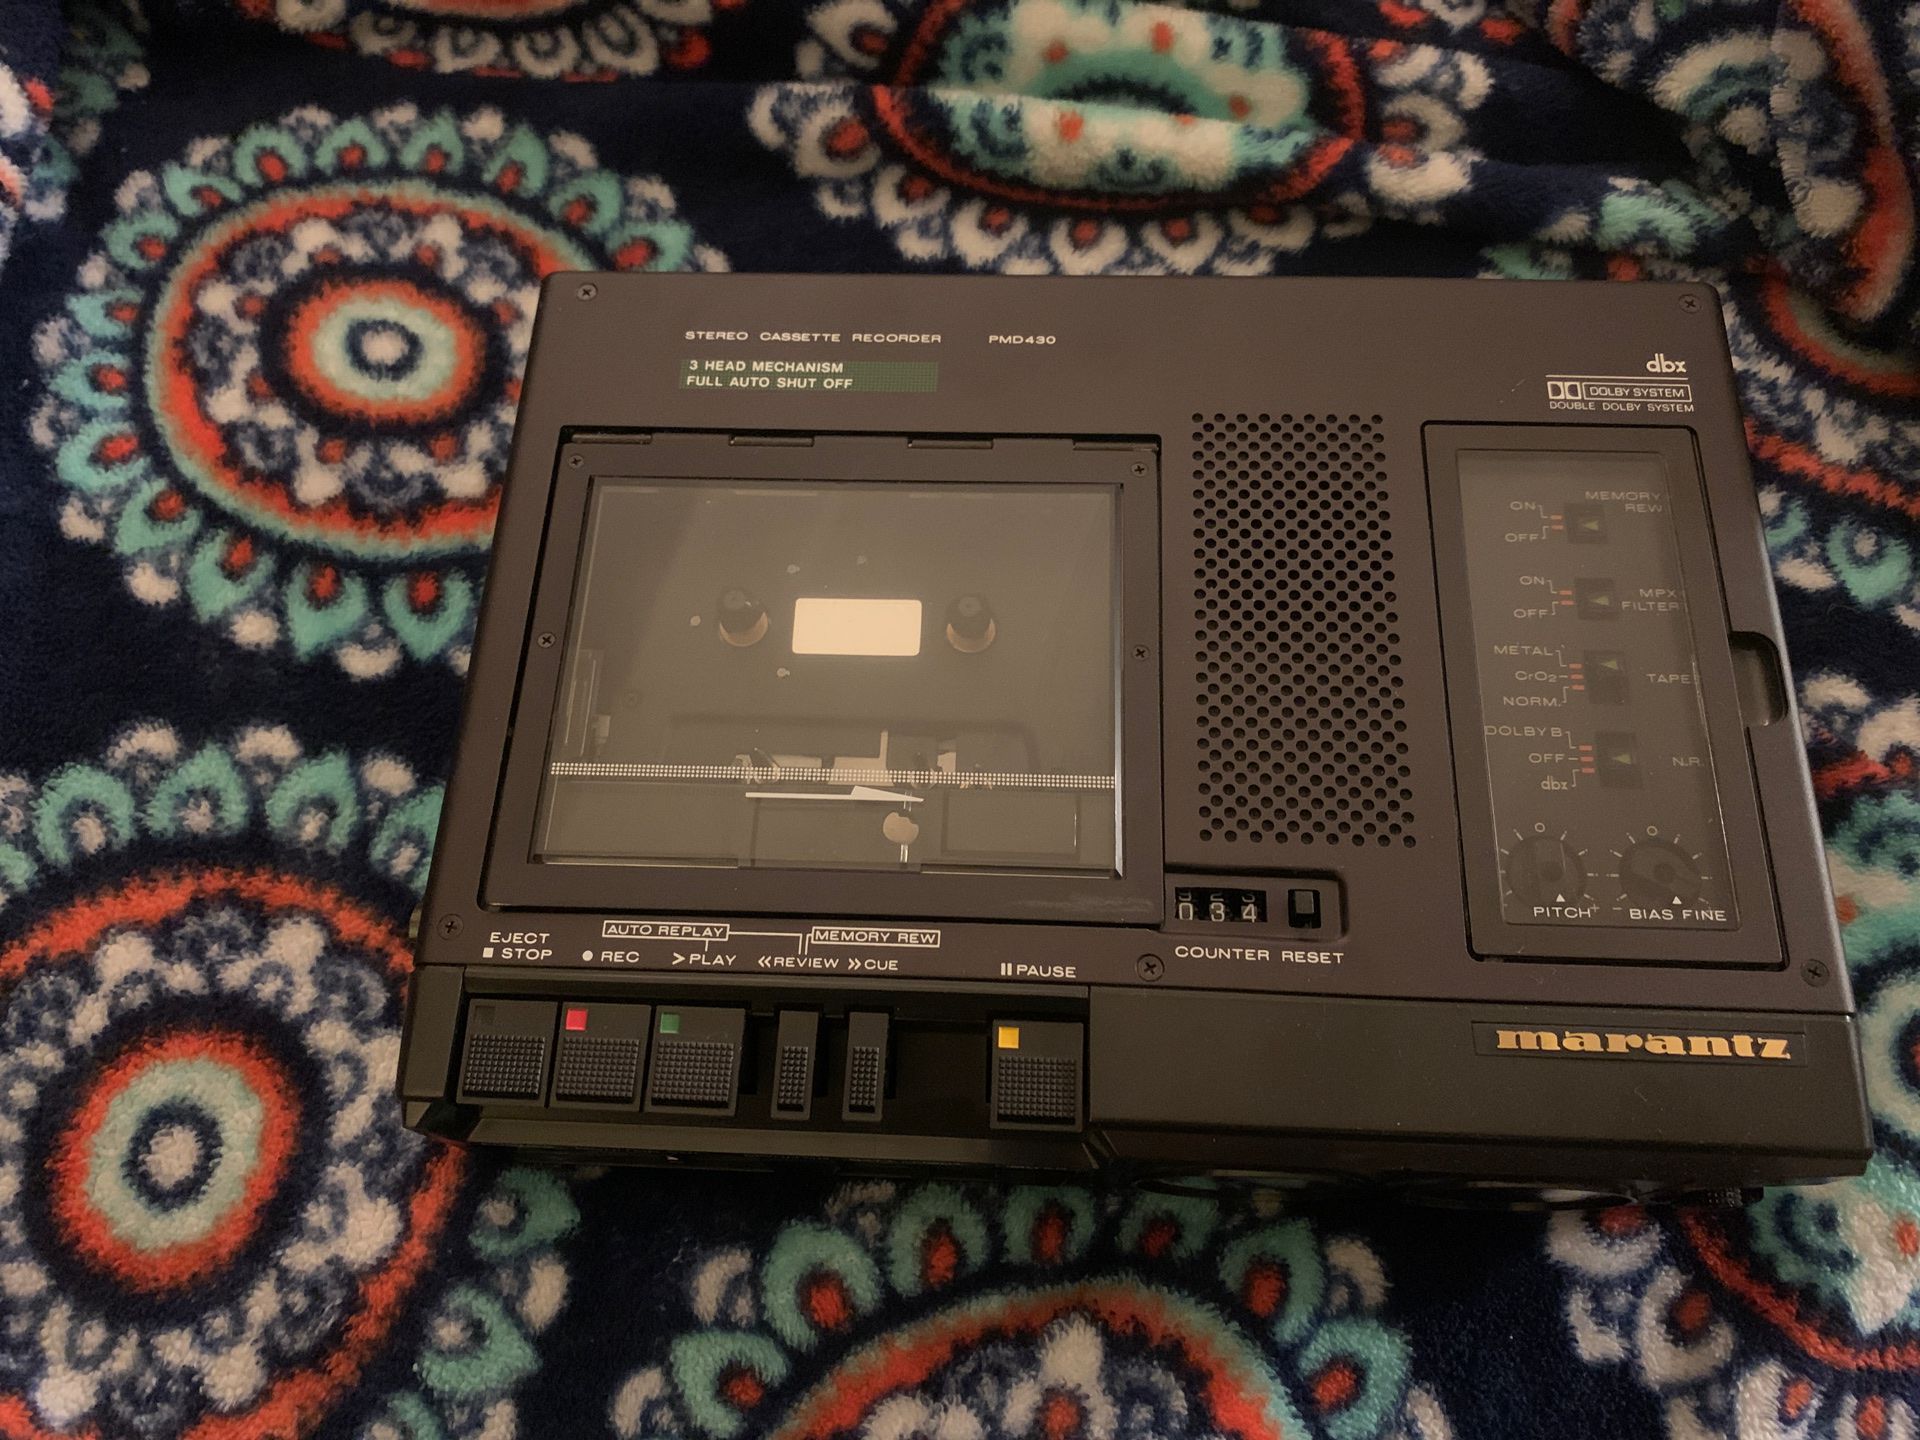 marantz PMD430 cassette player.